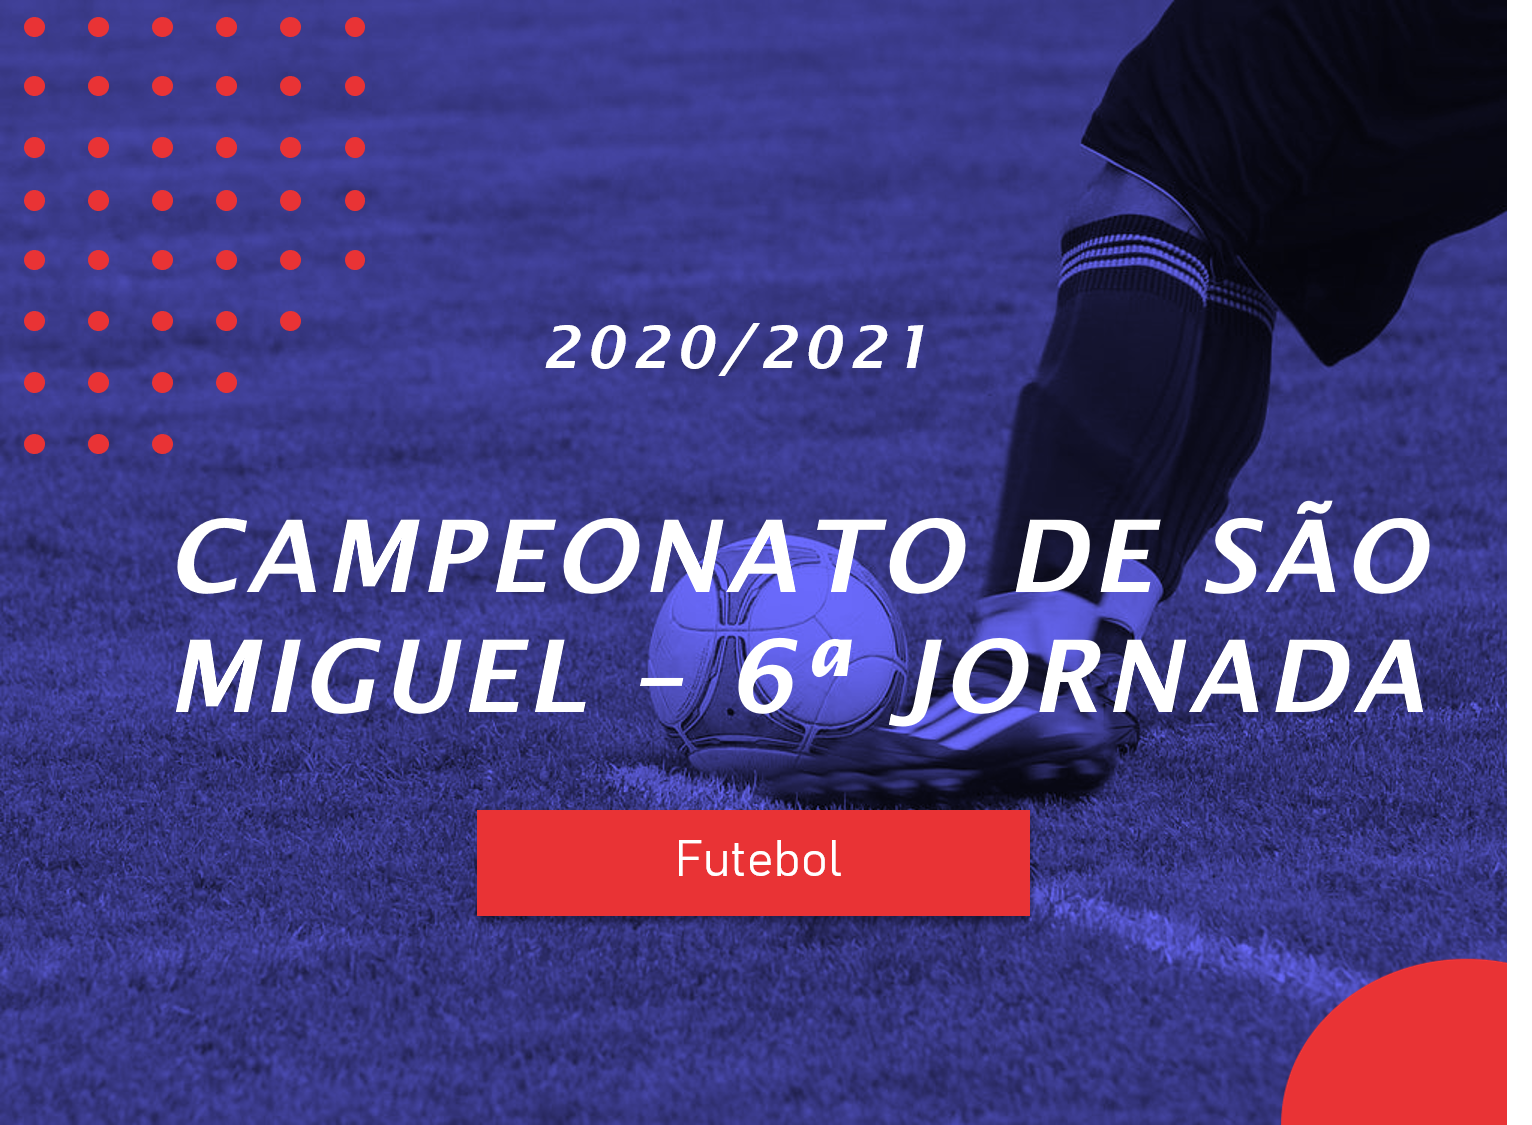 Campeonato de São Miguel - 6ª Jornada